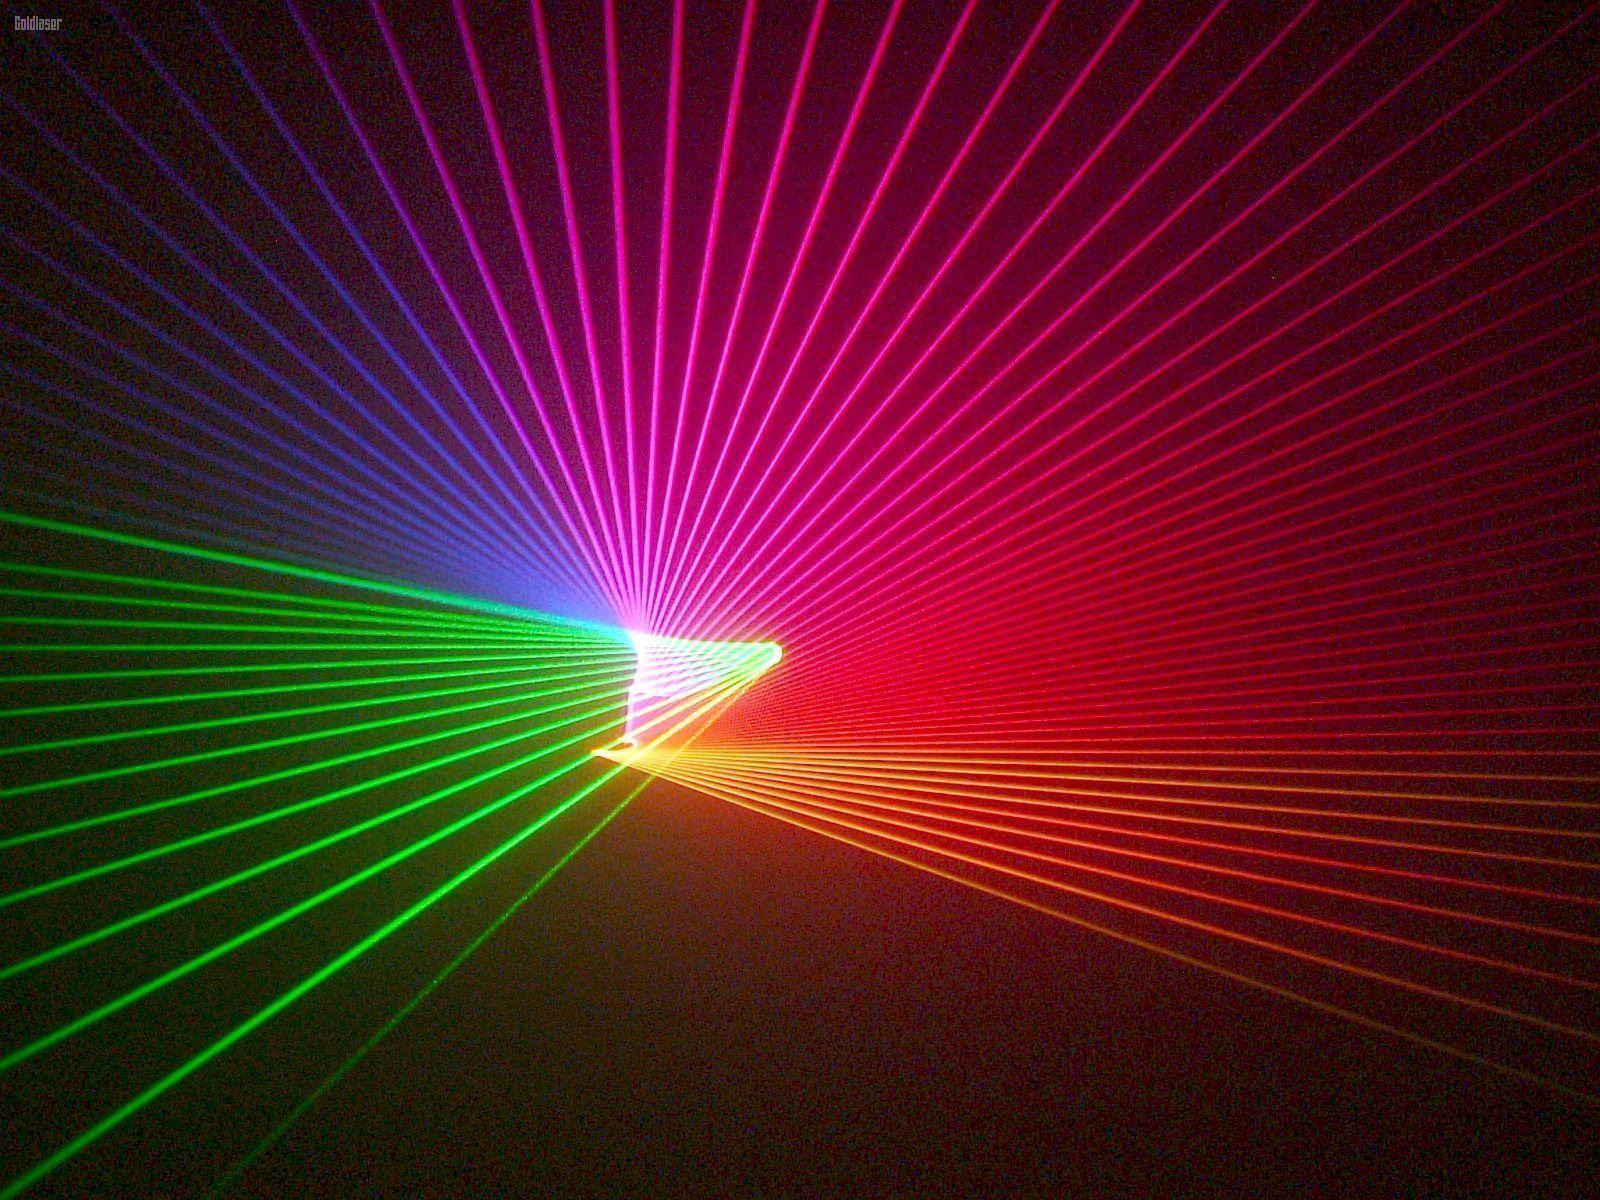 Wallpaper For > Laser Light Show Wallpaper